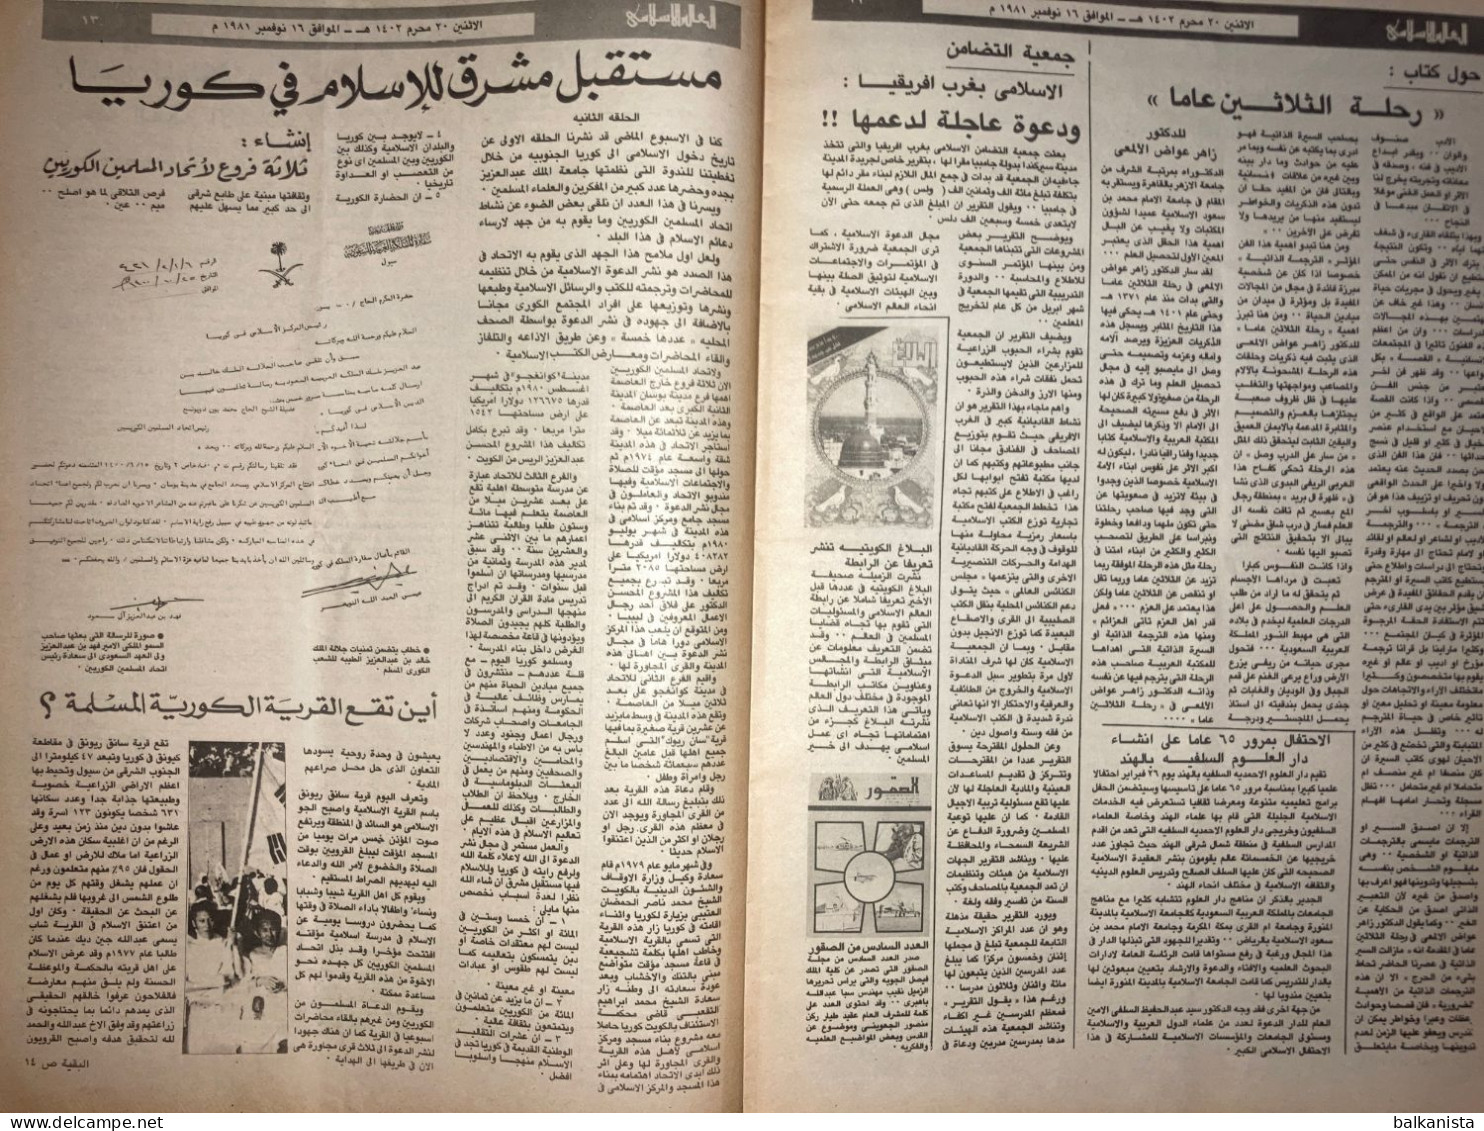 Saudi Arabia Akhbar al-Alam al-Islami Newspaper 16 February 1981